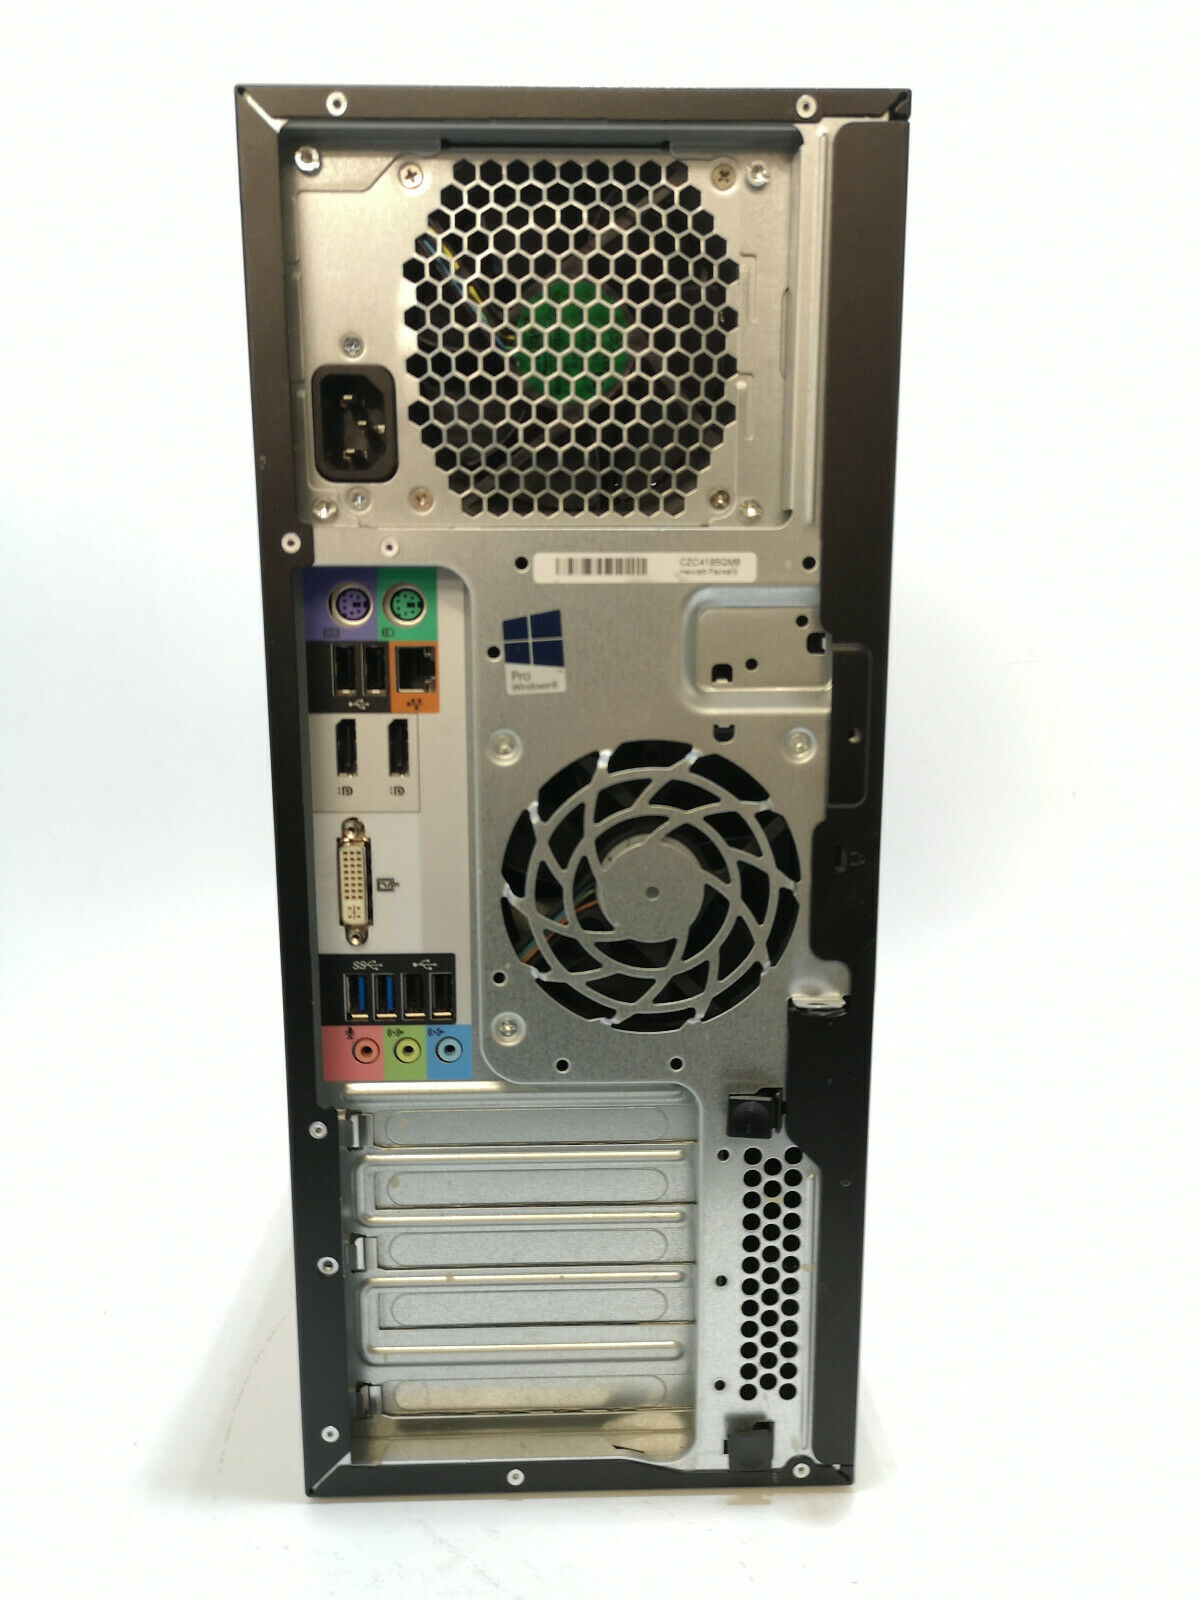 Refurbished HP Z230 Workstation Desktop Tower PC